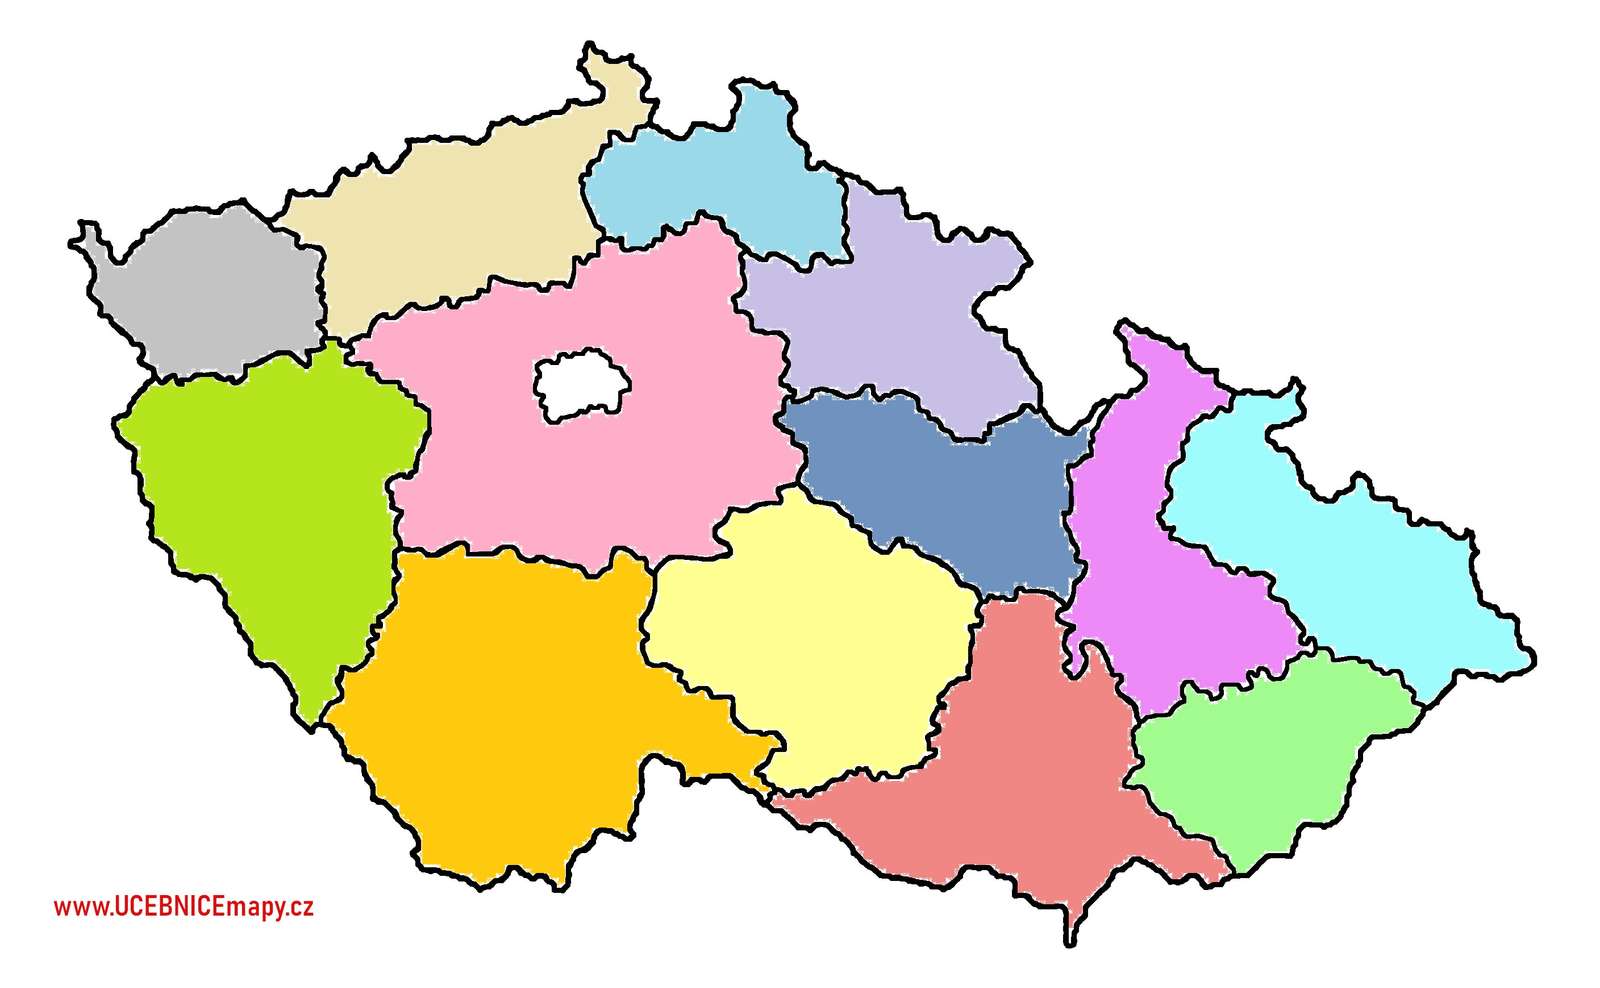 チェコ共和国の地域 ジグソーパズルオンライン